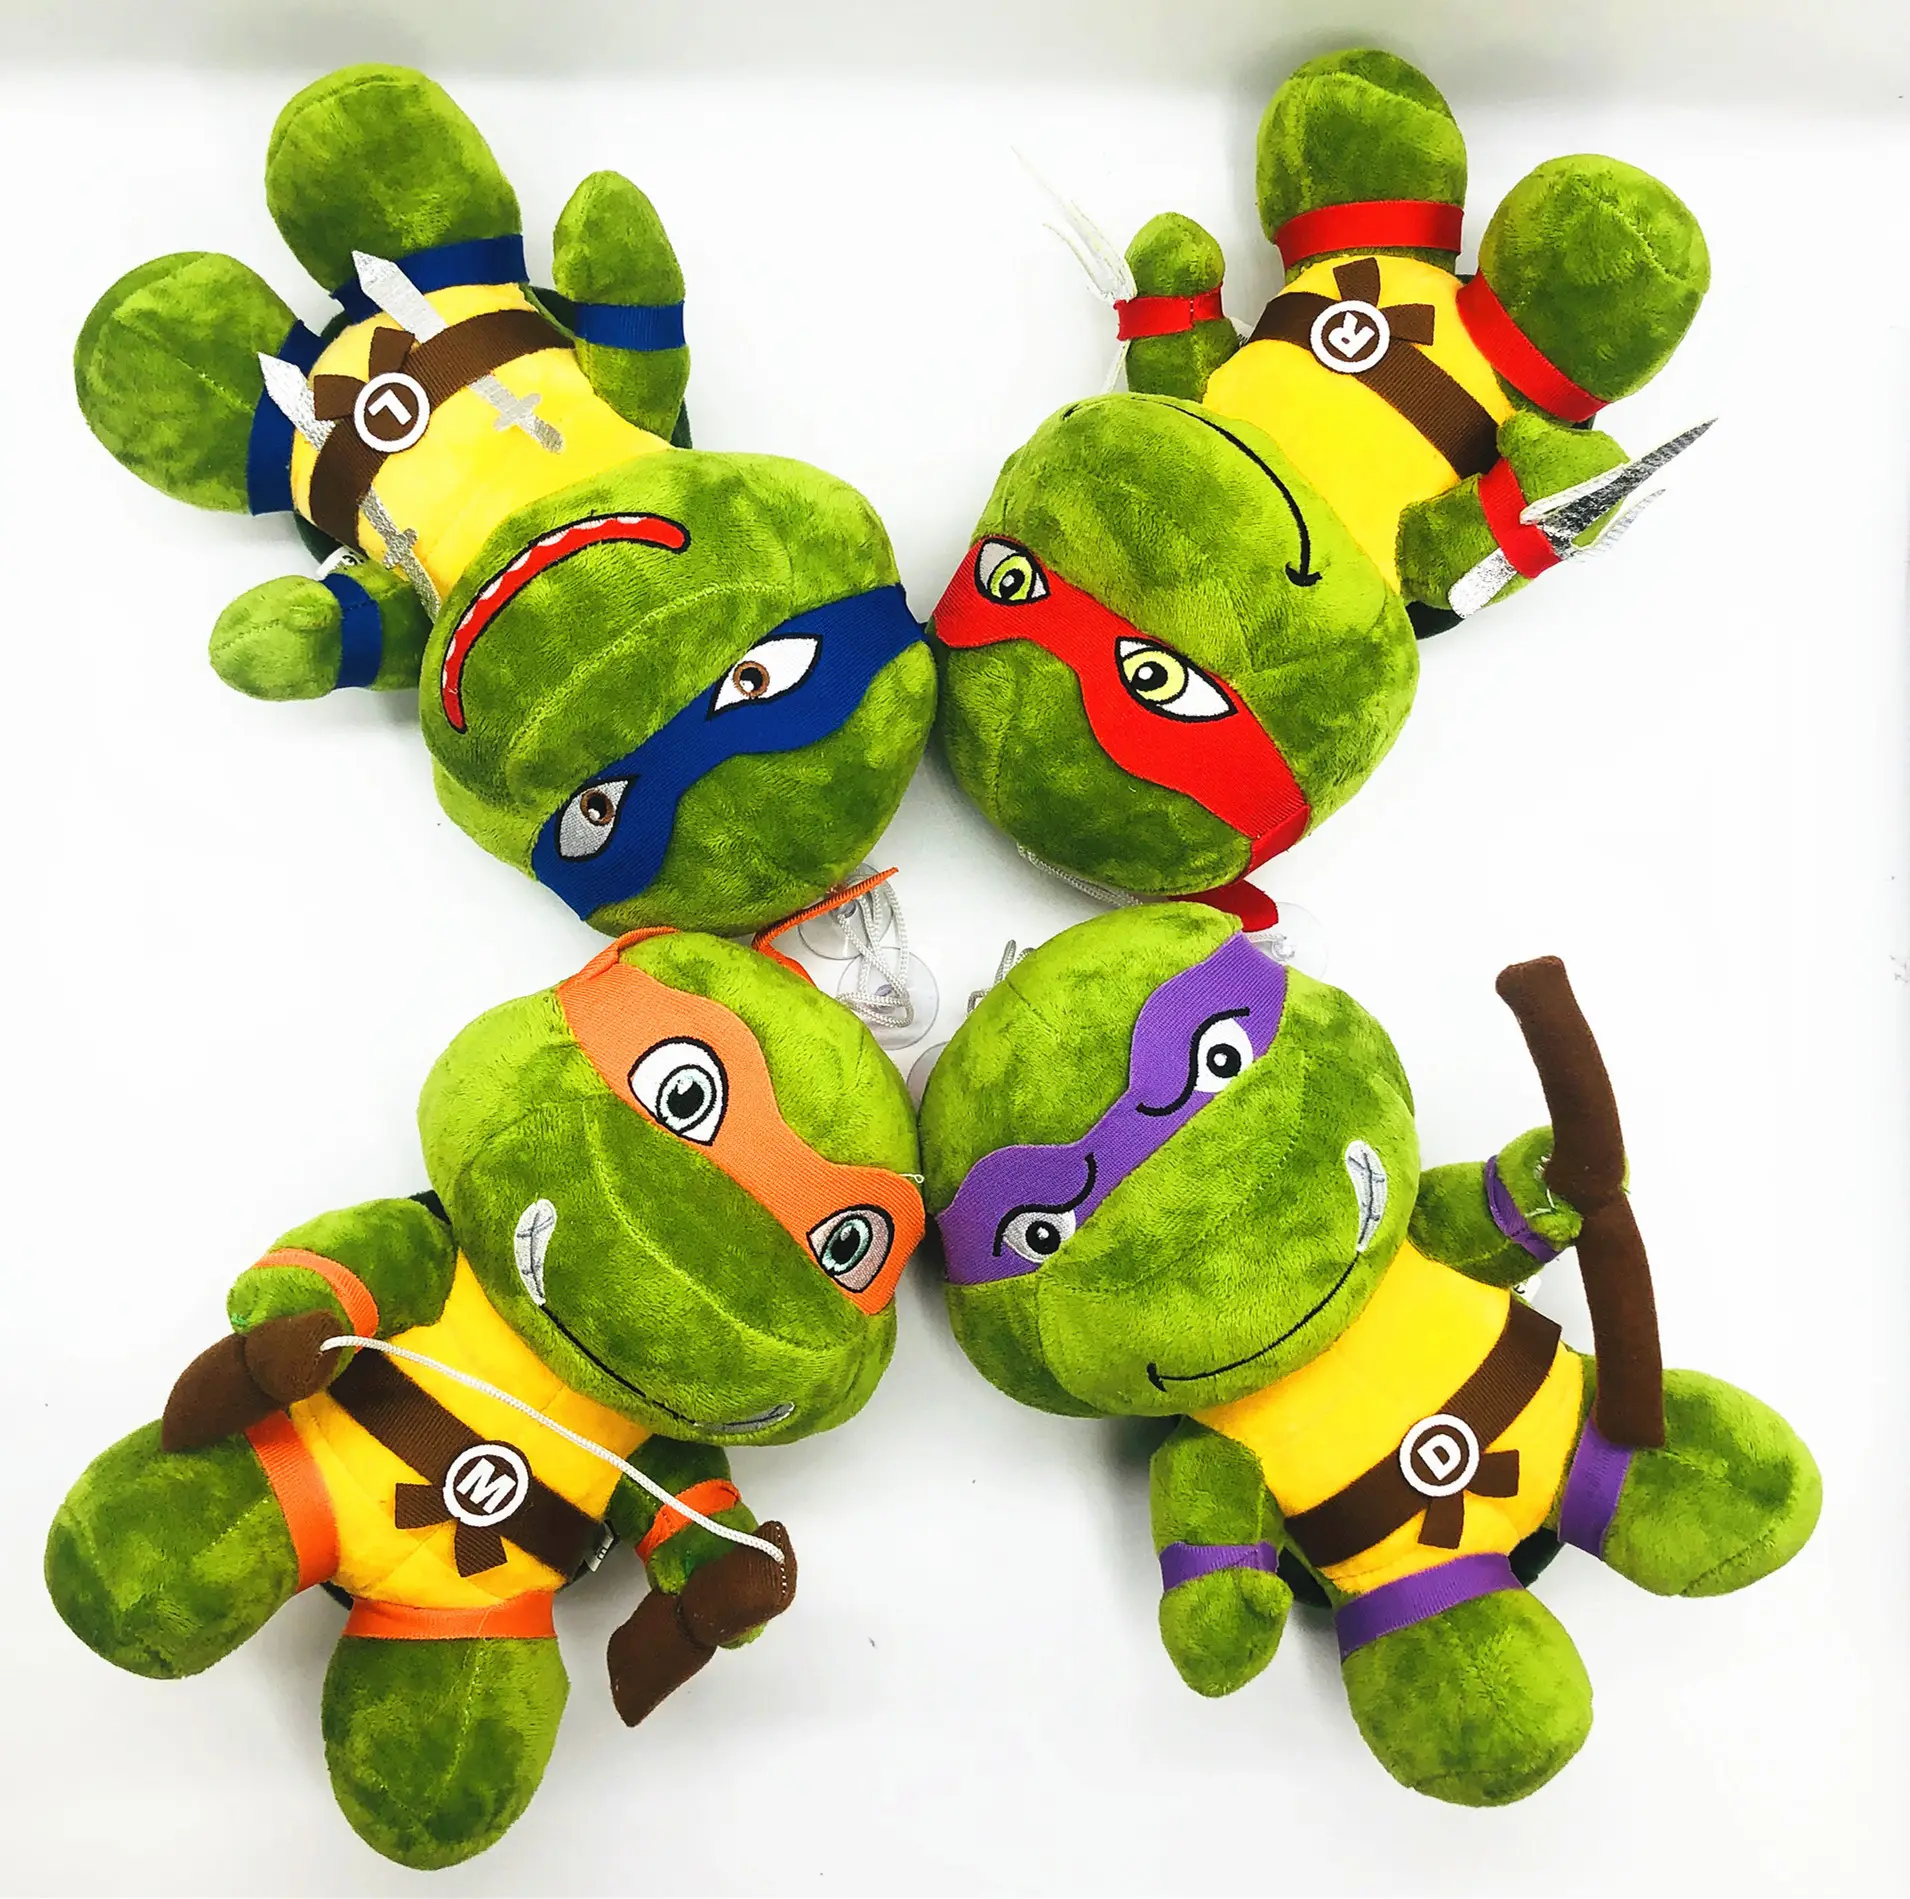 Runjoy özel anime kaplumbağalar peluş bebekler ninja şekil sevimli yumuşak dolması promosyon hediyeler model kaplumbağalar pençe makinesi için peluş oyuncaklar